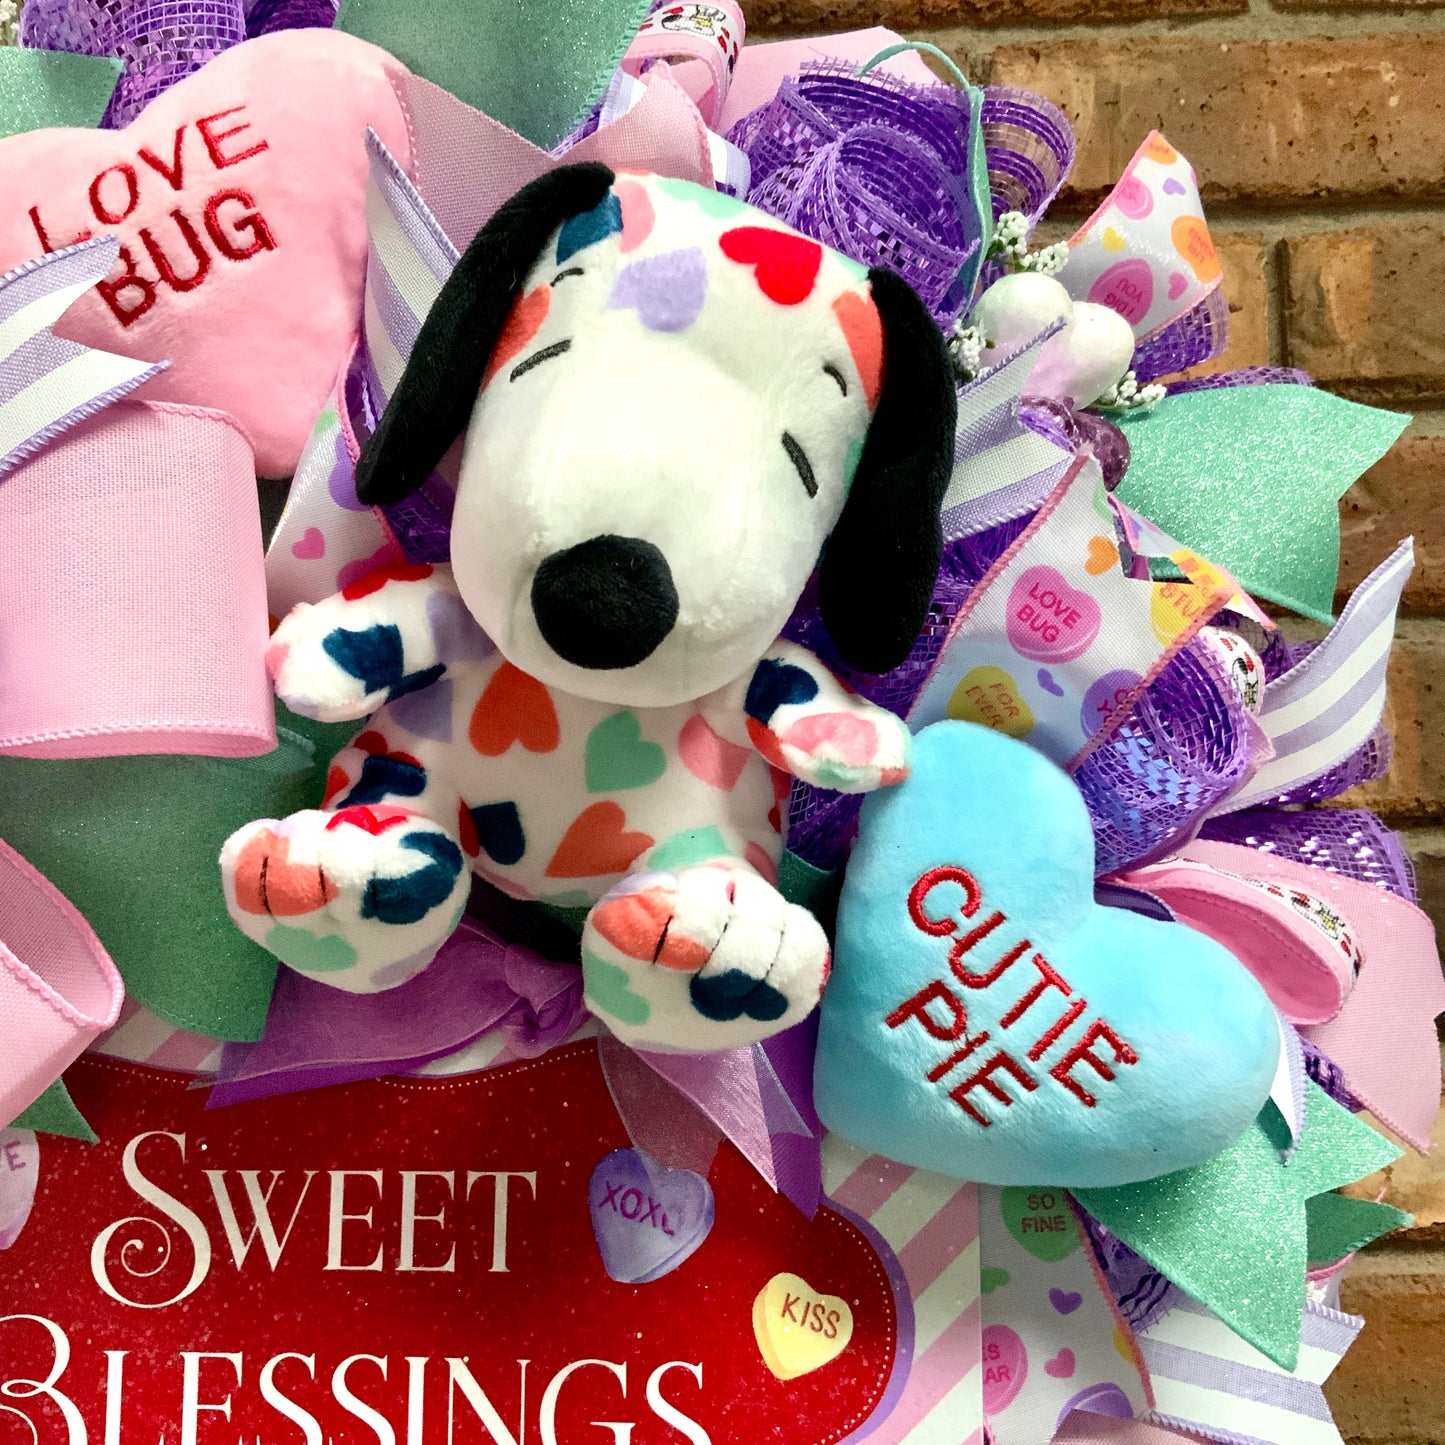 Snoopy Kisses Wreath, Snoopy Wreath, Dog Wreath, Valentine Snoopy Wreath, Dog Kisses Wreath, Valentine Dog Wreath, Conversation Hearts Decor